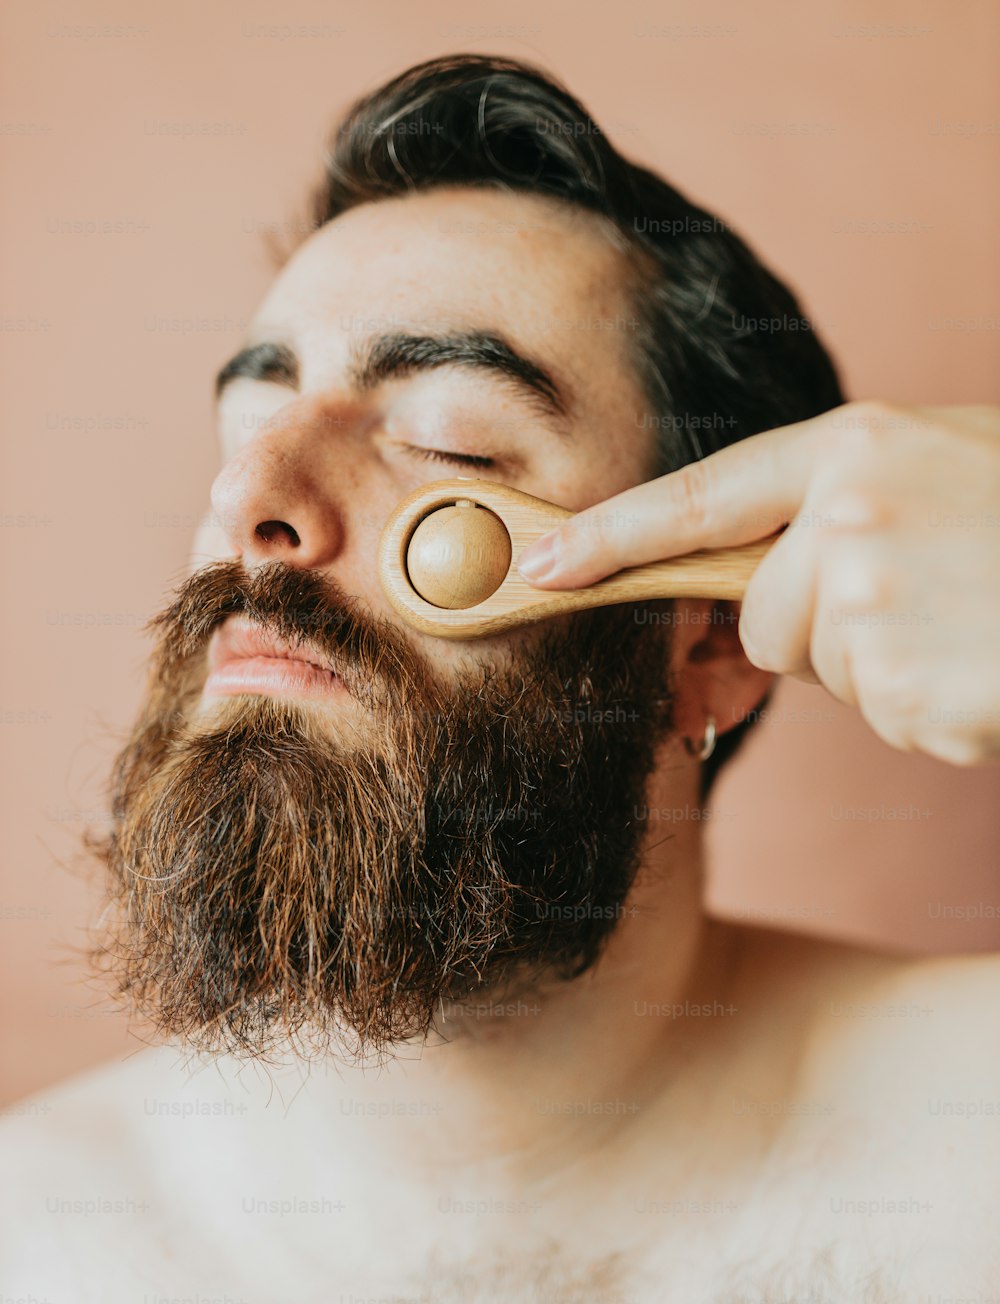 Un homme se brosse la barbe avec une brosse en bois